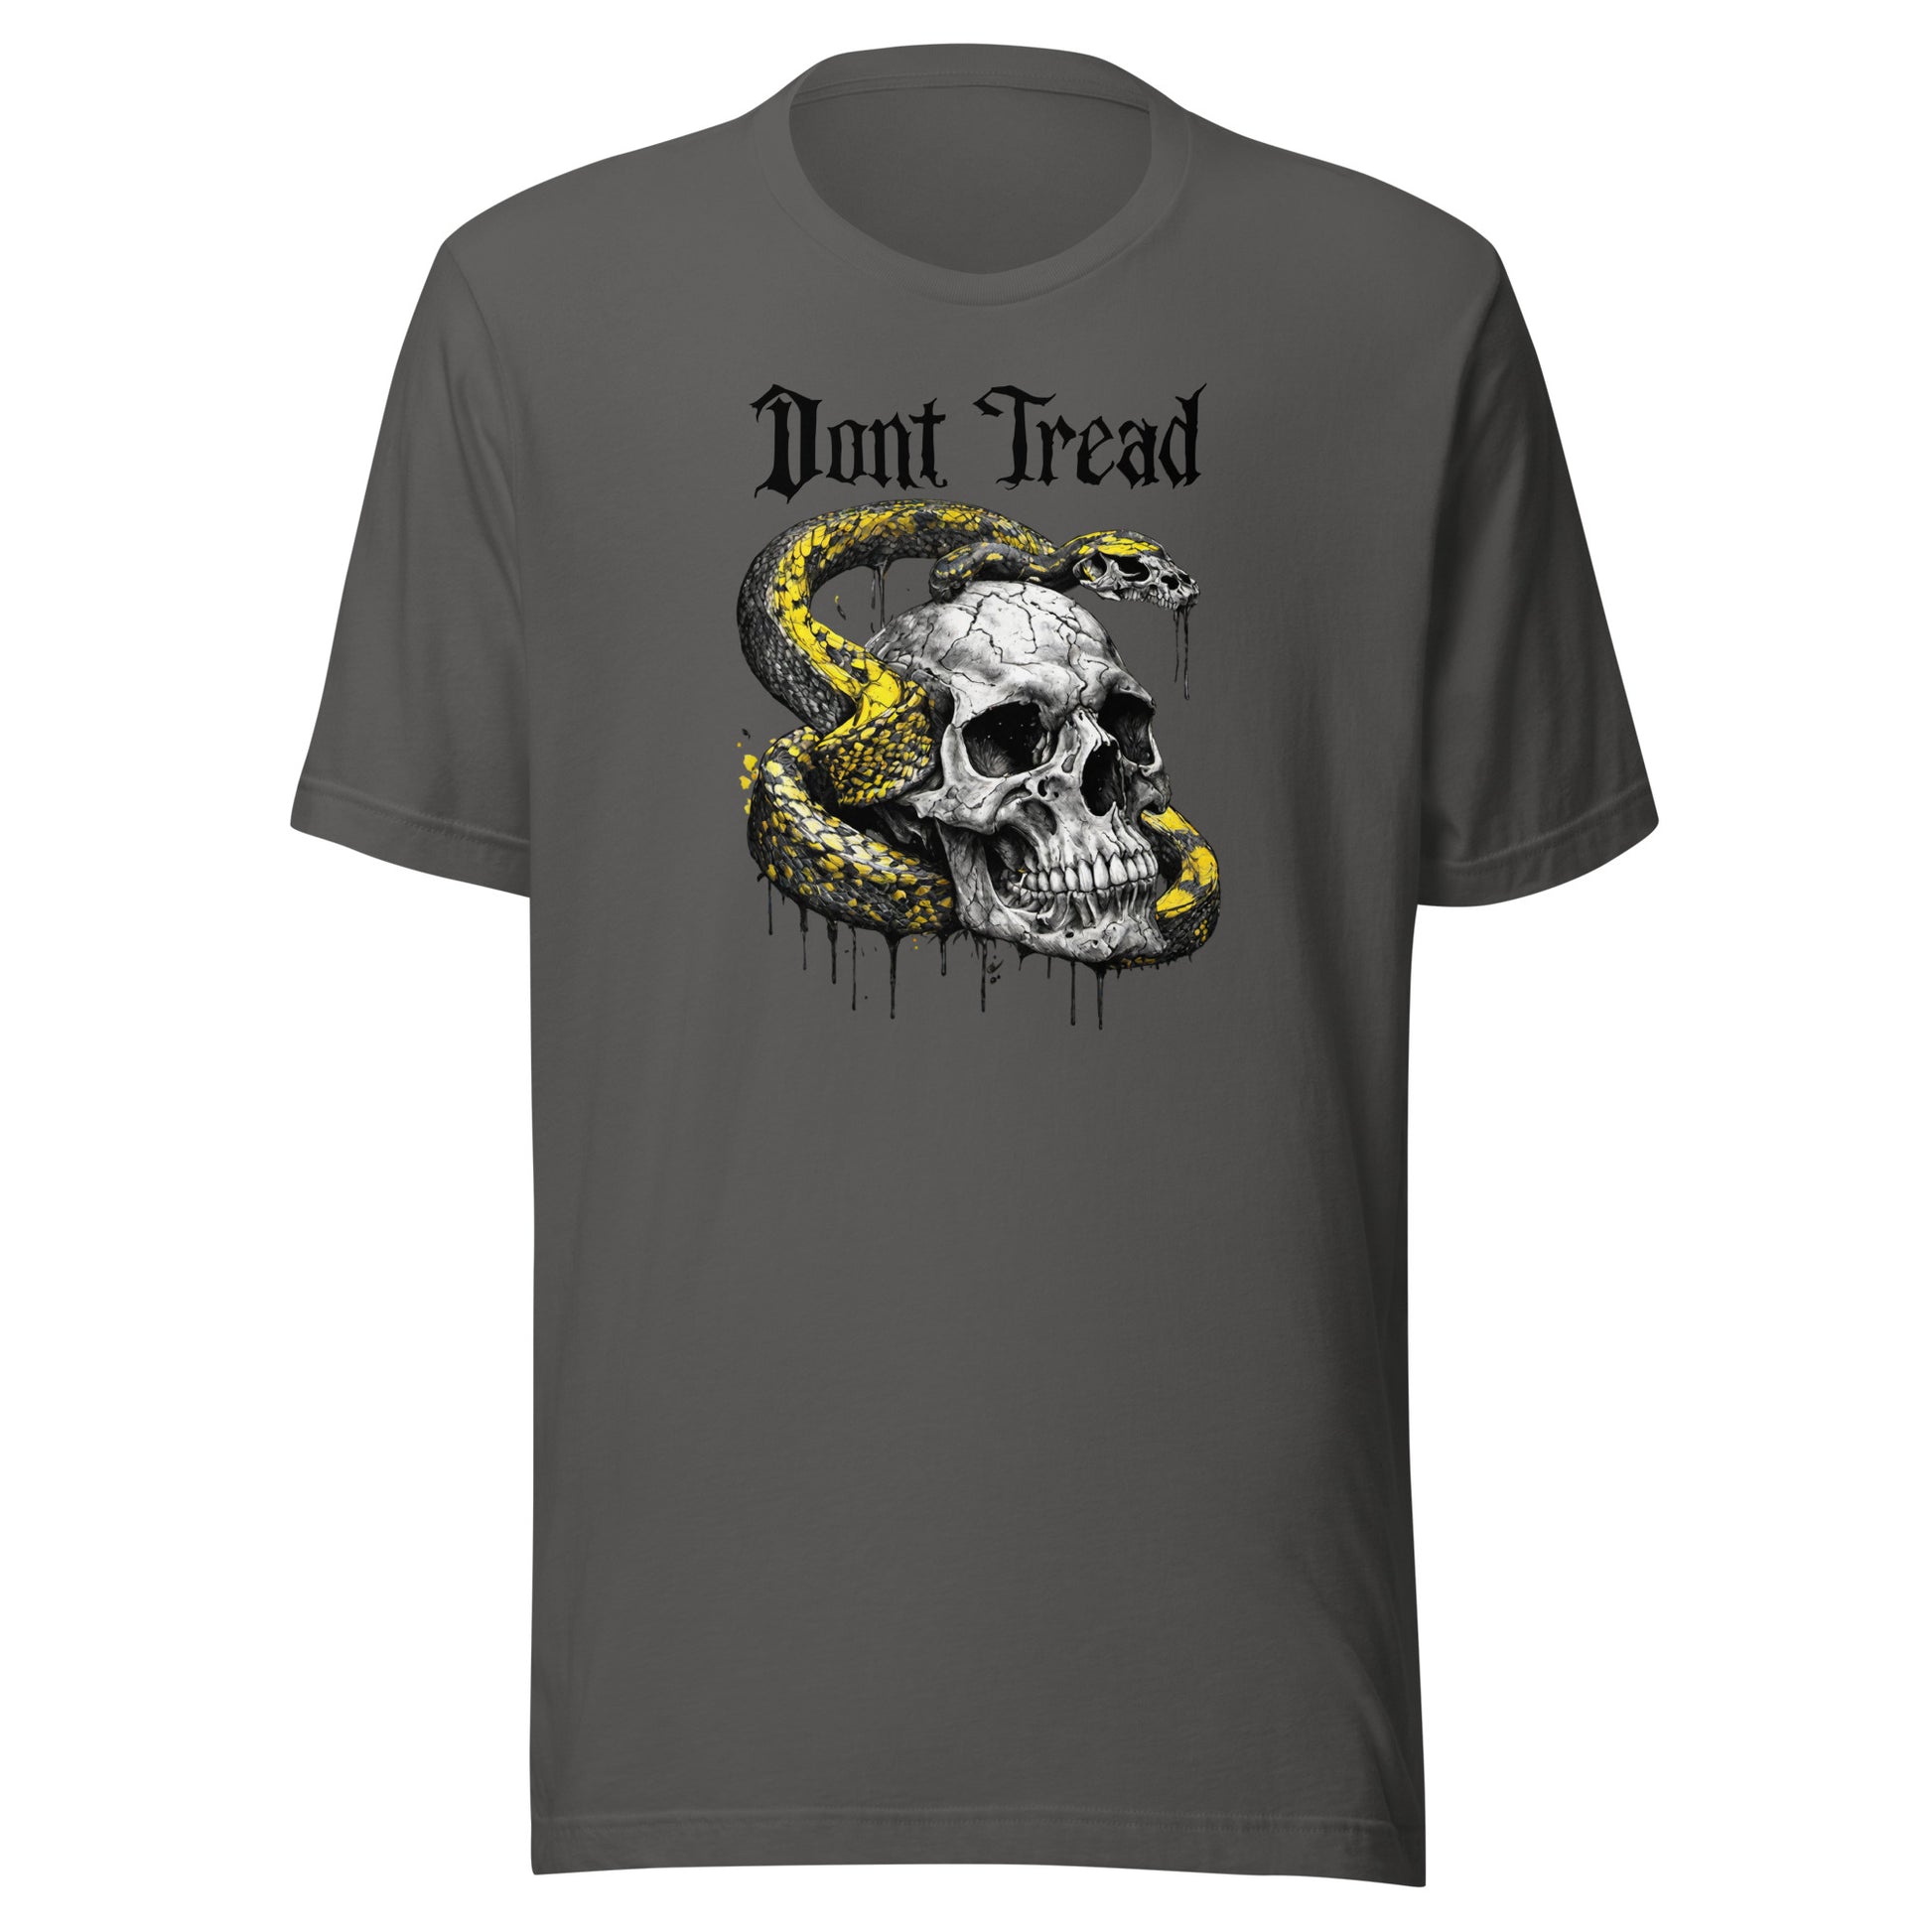 Don't Tread Snake & Skull 2nd Amendment Men's T-Shirt Asphalt